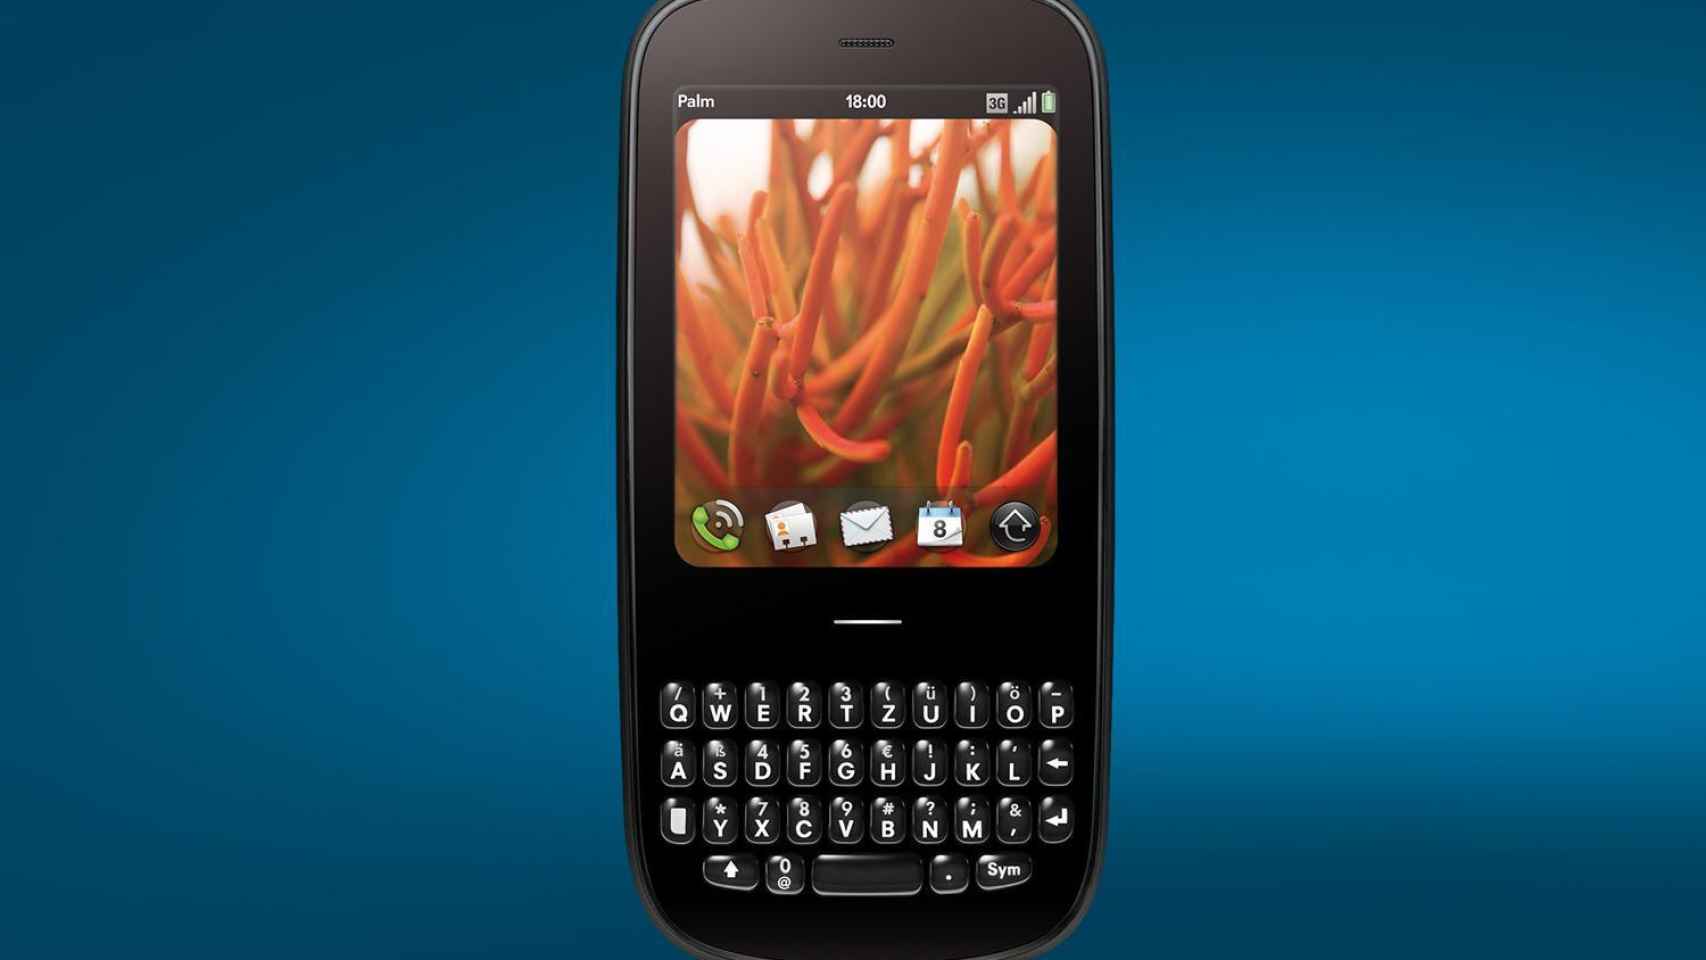 La mítica marca Palm lanzará nuevos móviles con Android